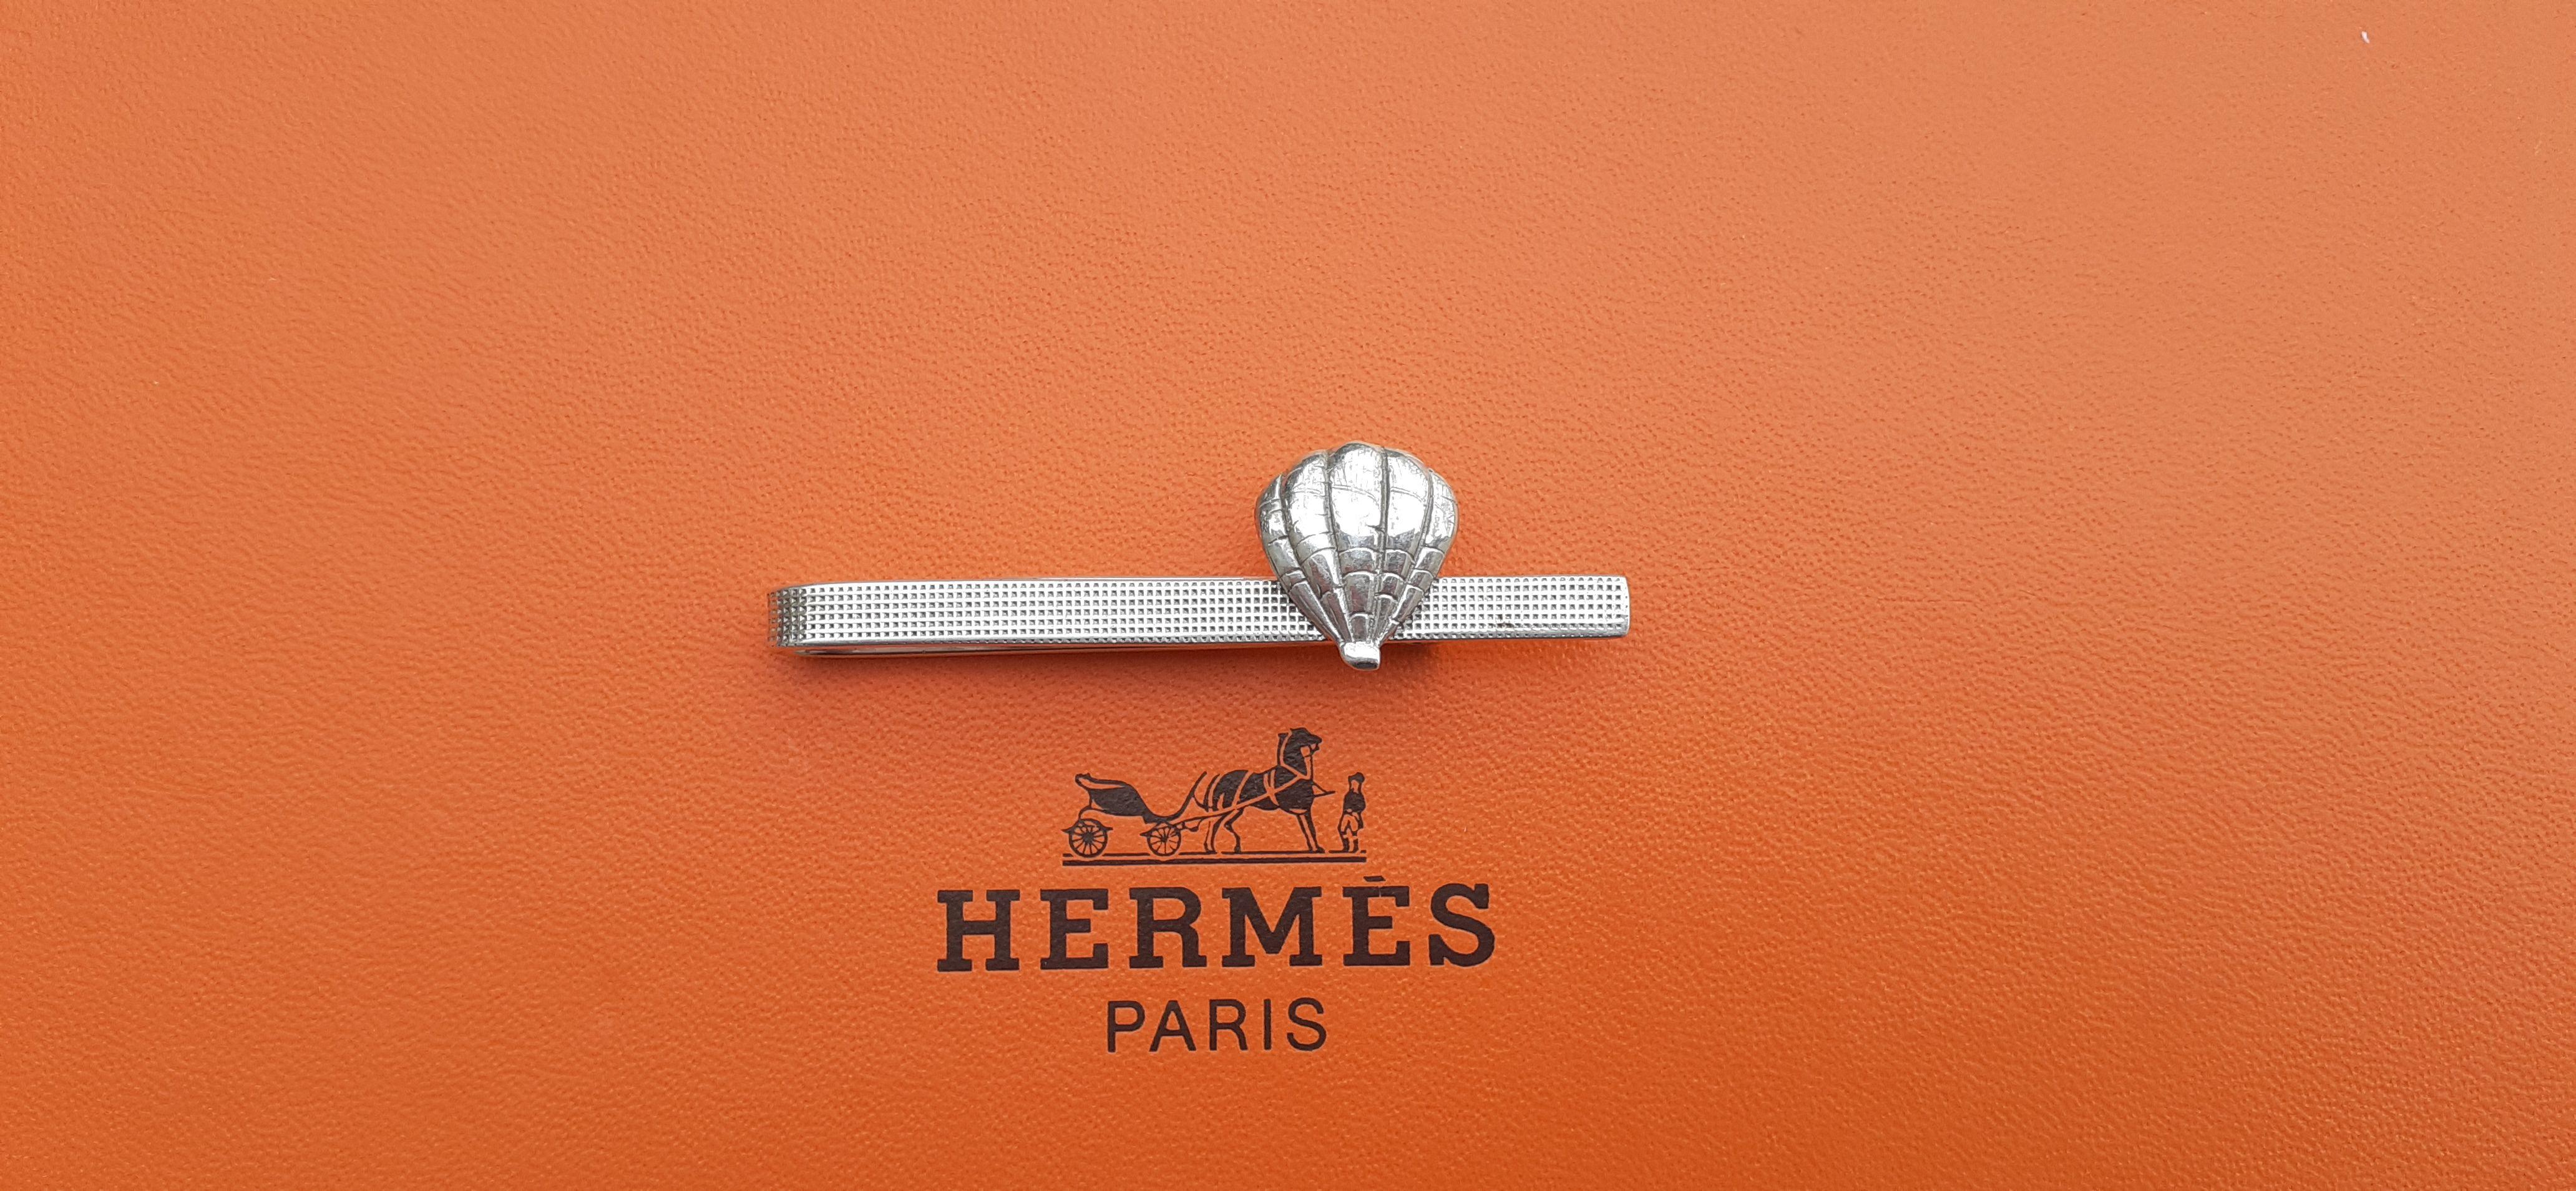 Ravissante et rare pince à cravate Hermès authentique

En forme de montgolfière ou de coquillage

Vintage By

En argent

